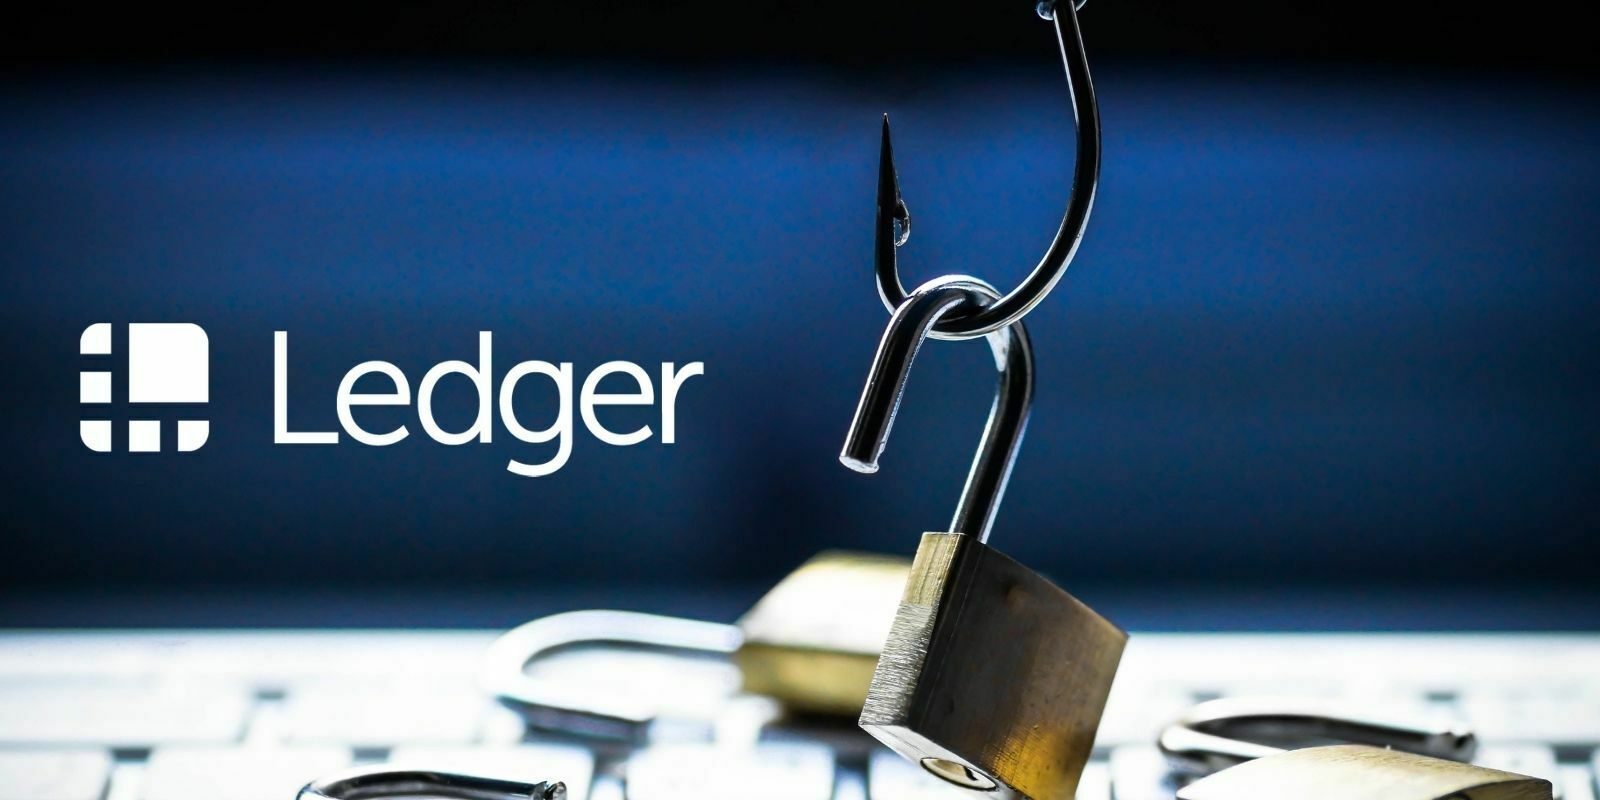 Une campagne de phishing cible les détenteurs de portefeuilles Ledger